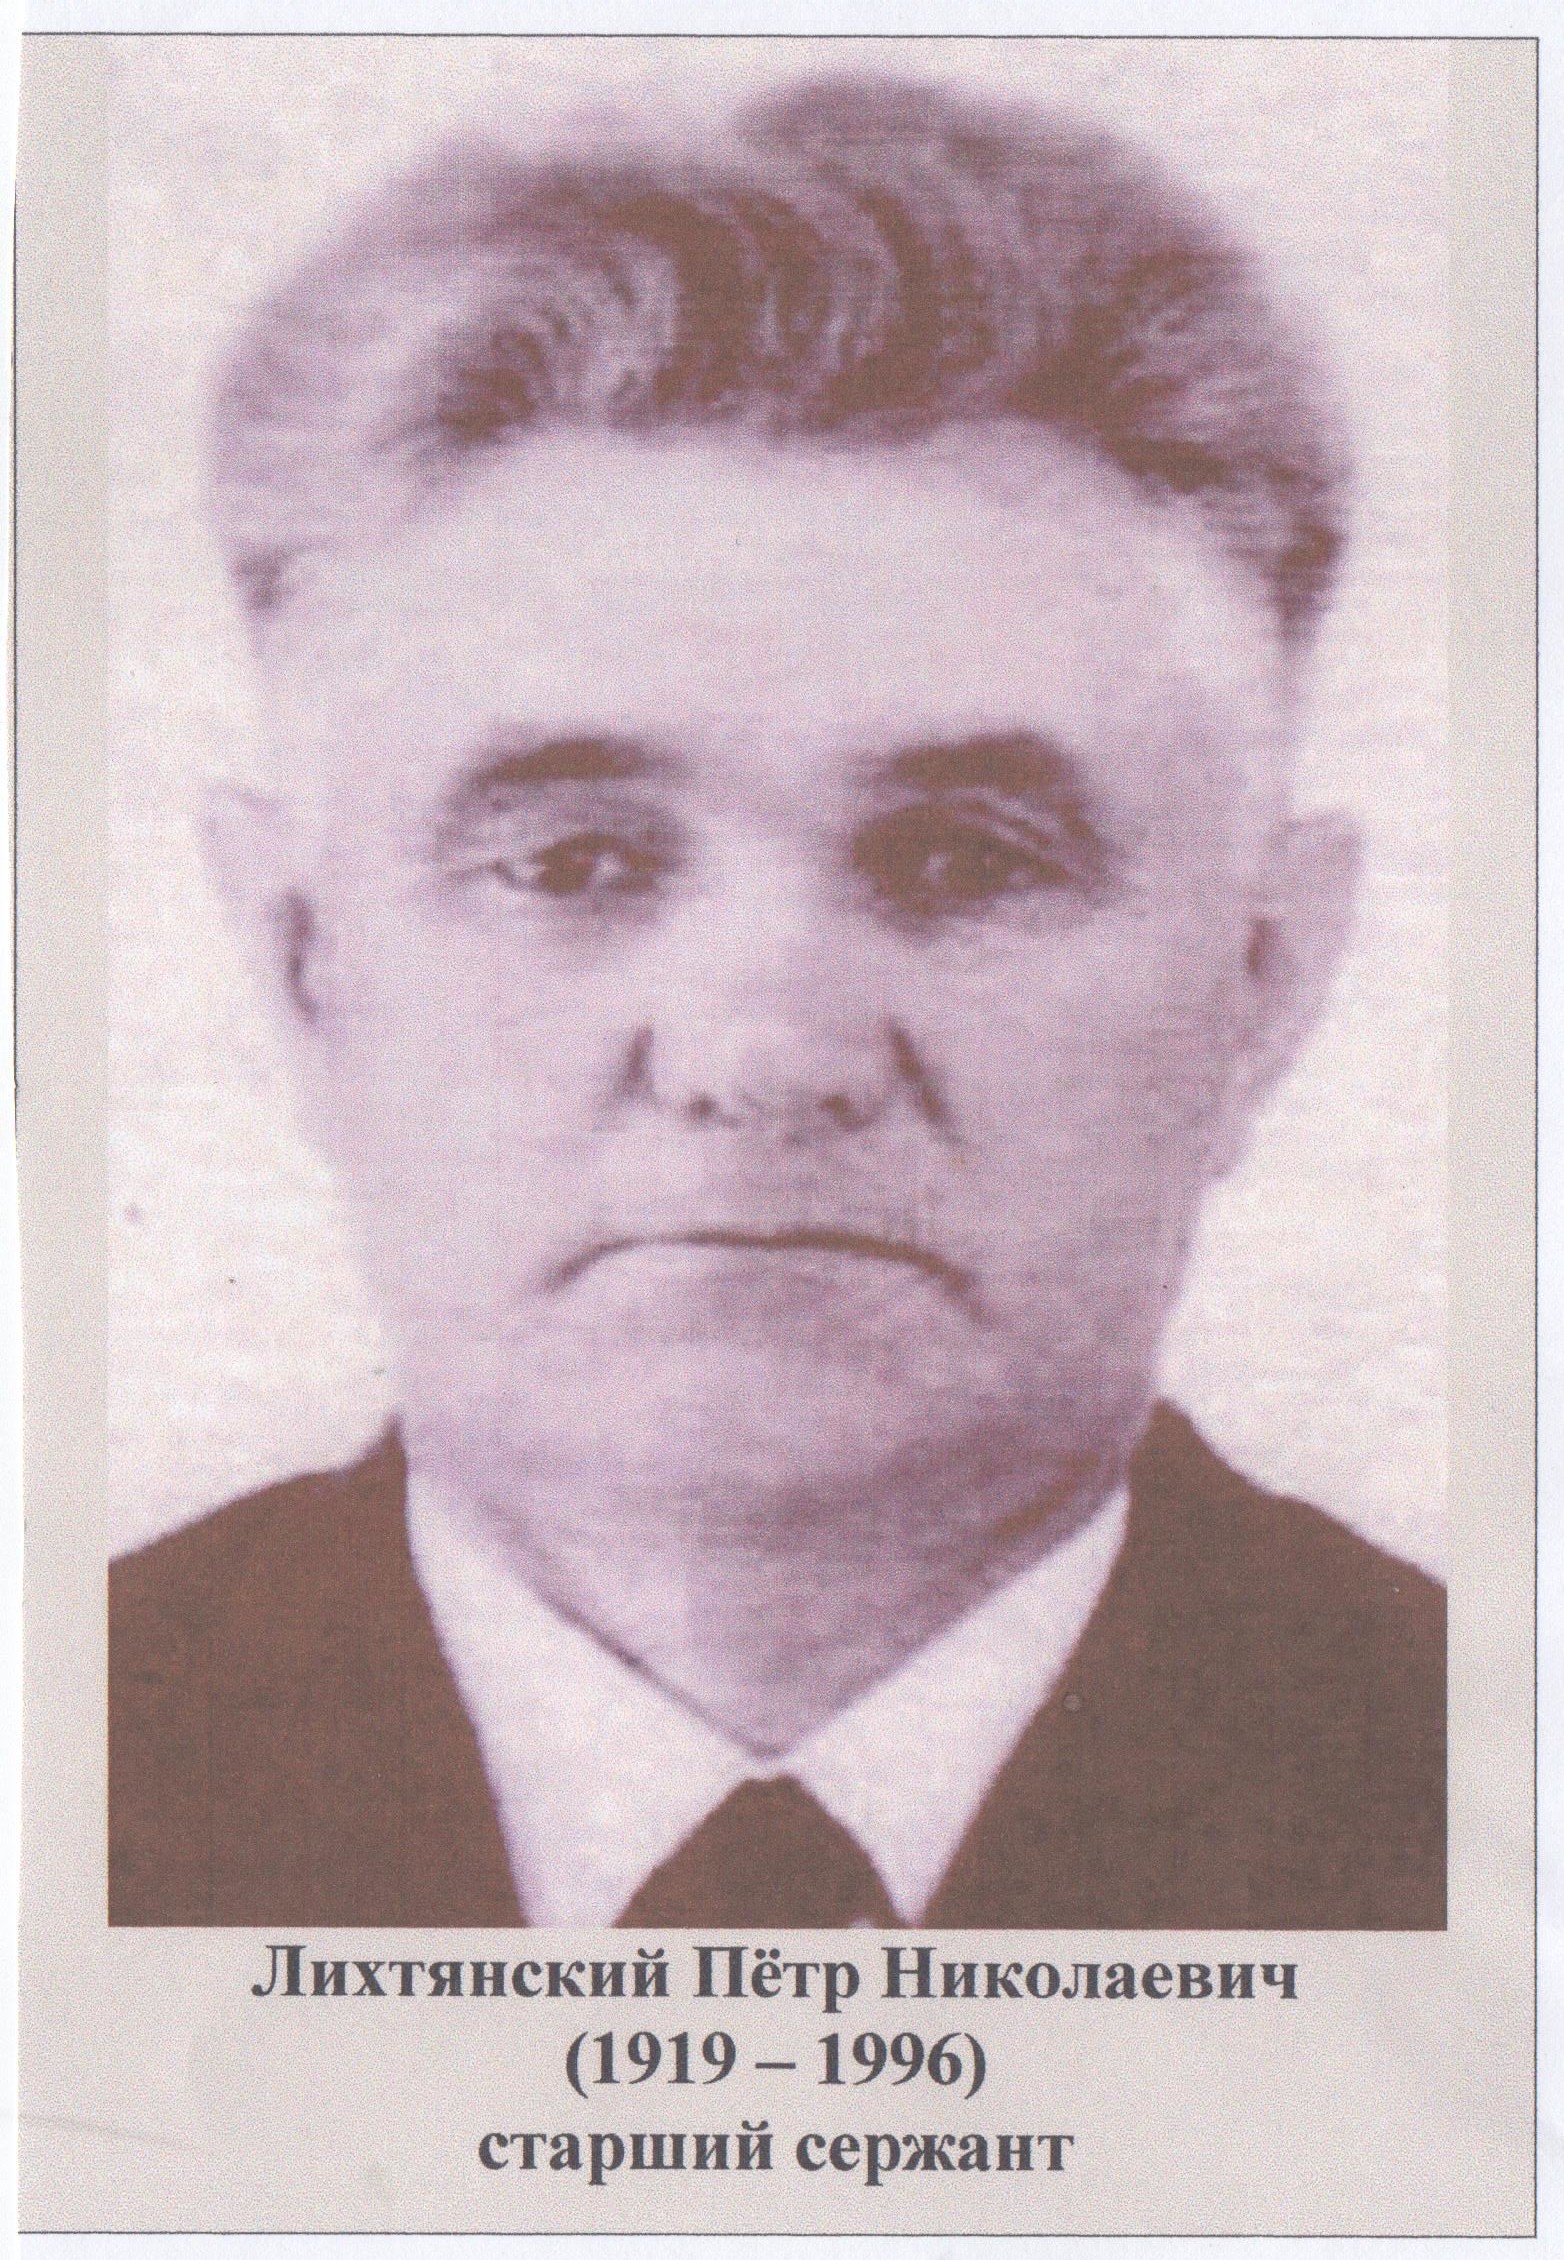 Likhtyanskiy